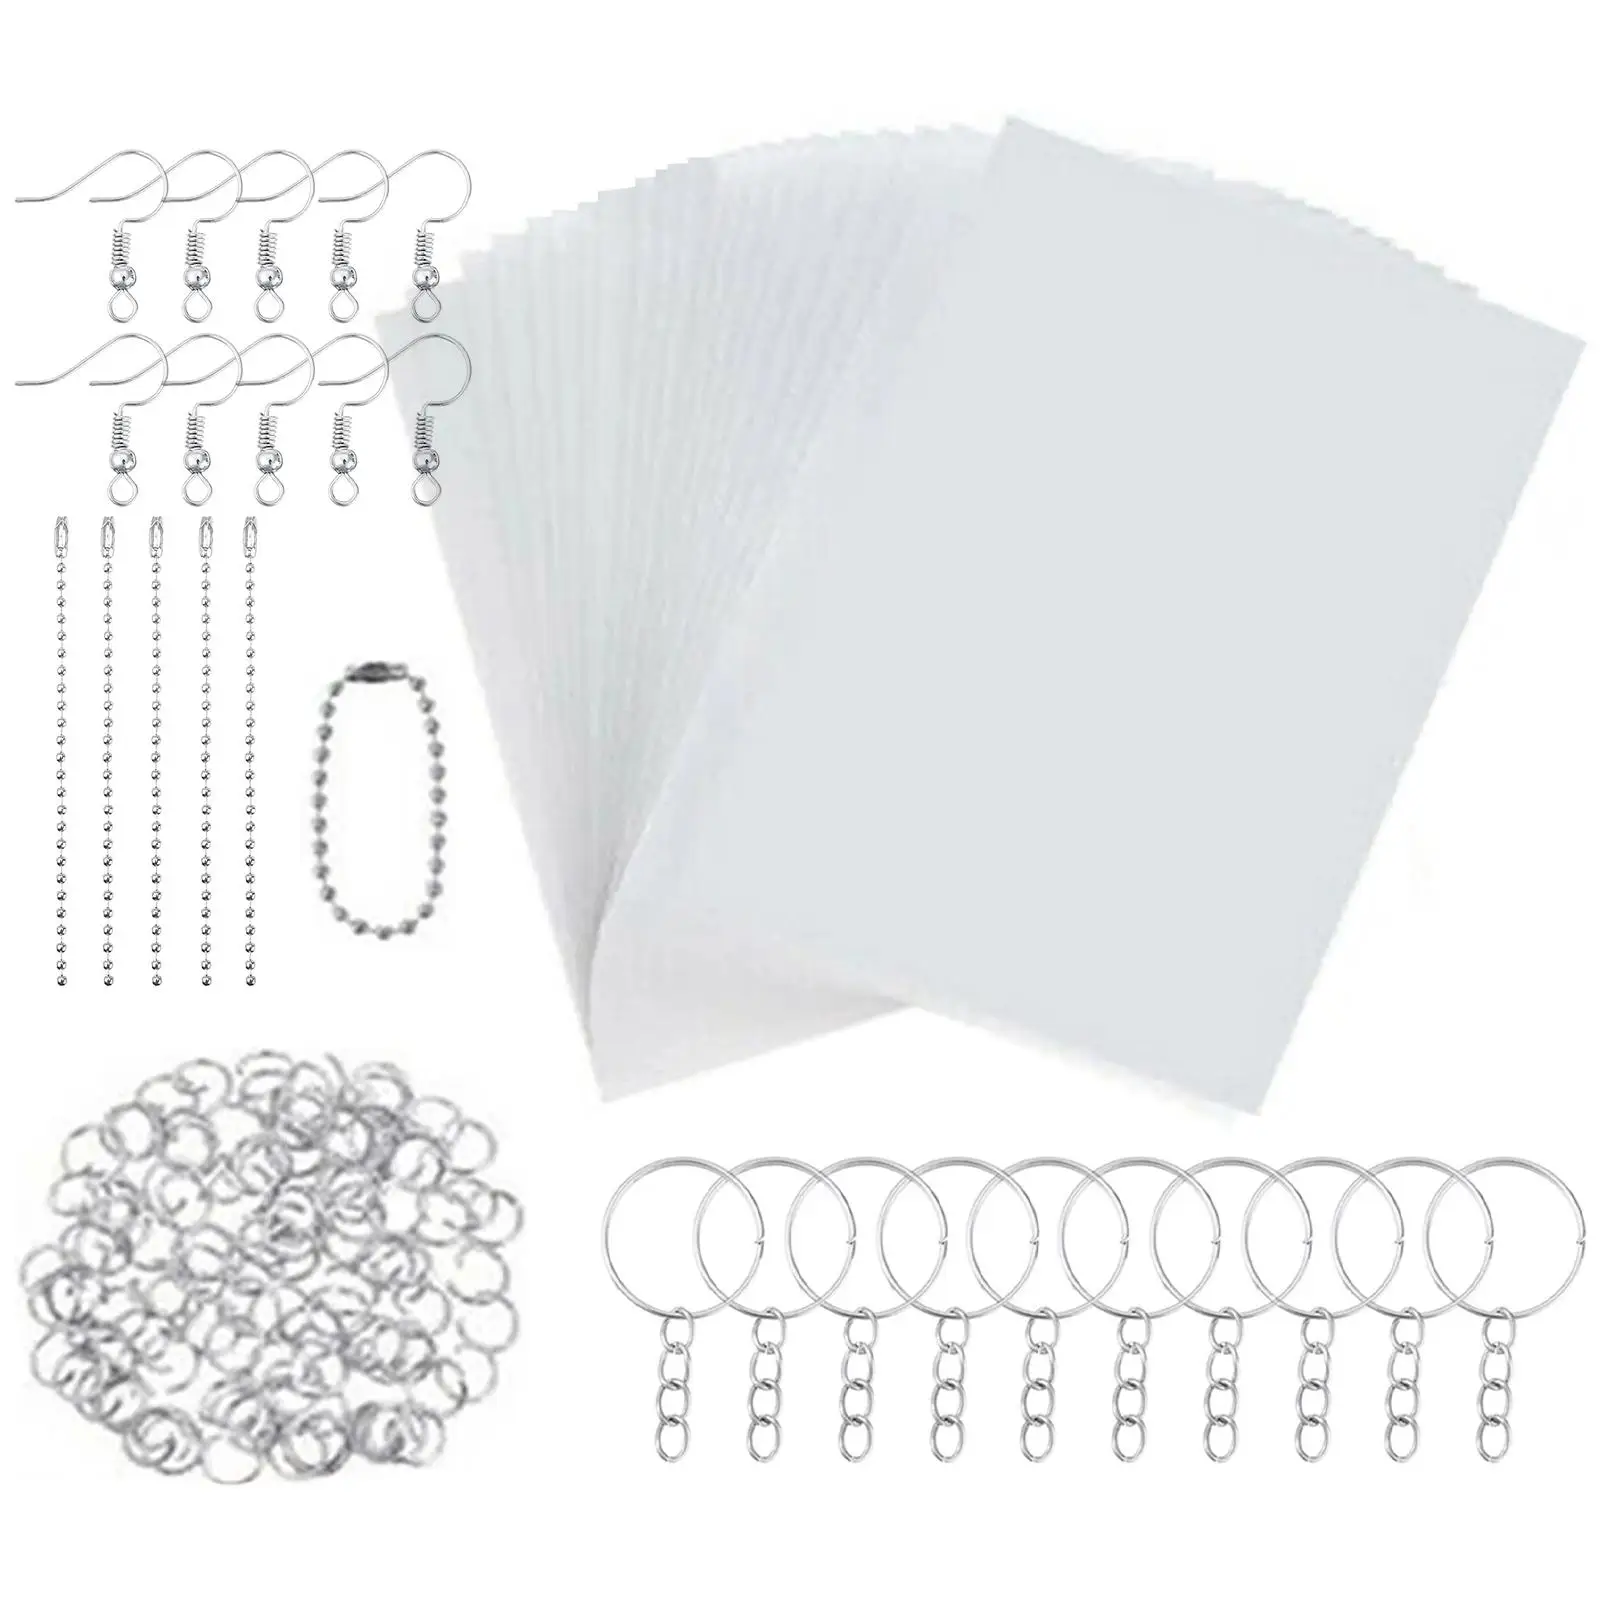 Heat Shrink Plastic Sheets Set Pack Paper Heat Shrink Sheets for Craft Embellishment Scrapbook Card Making